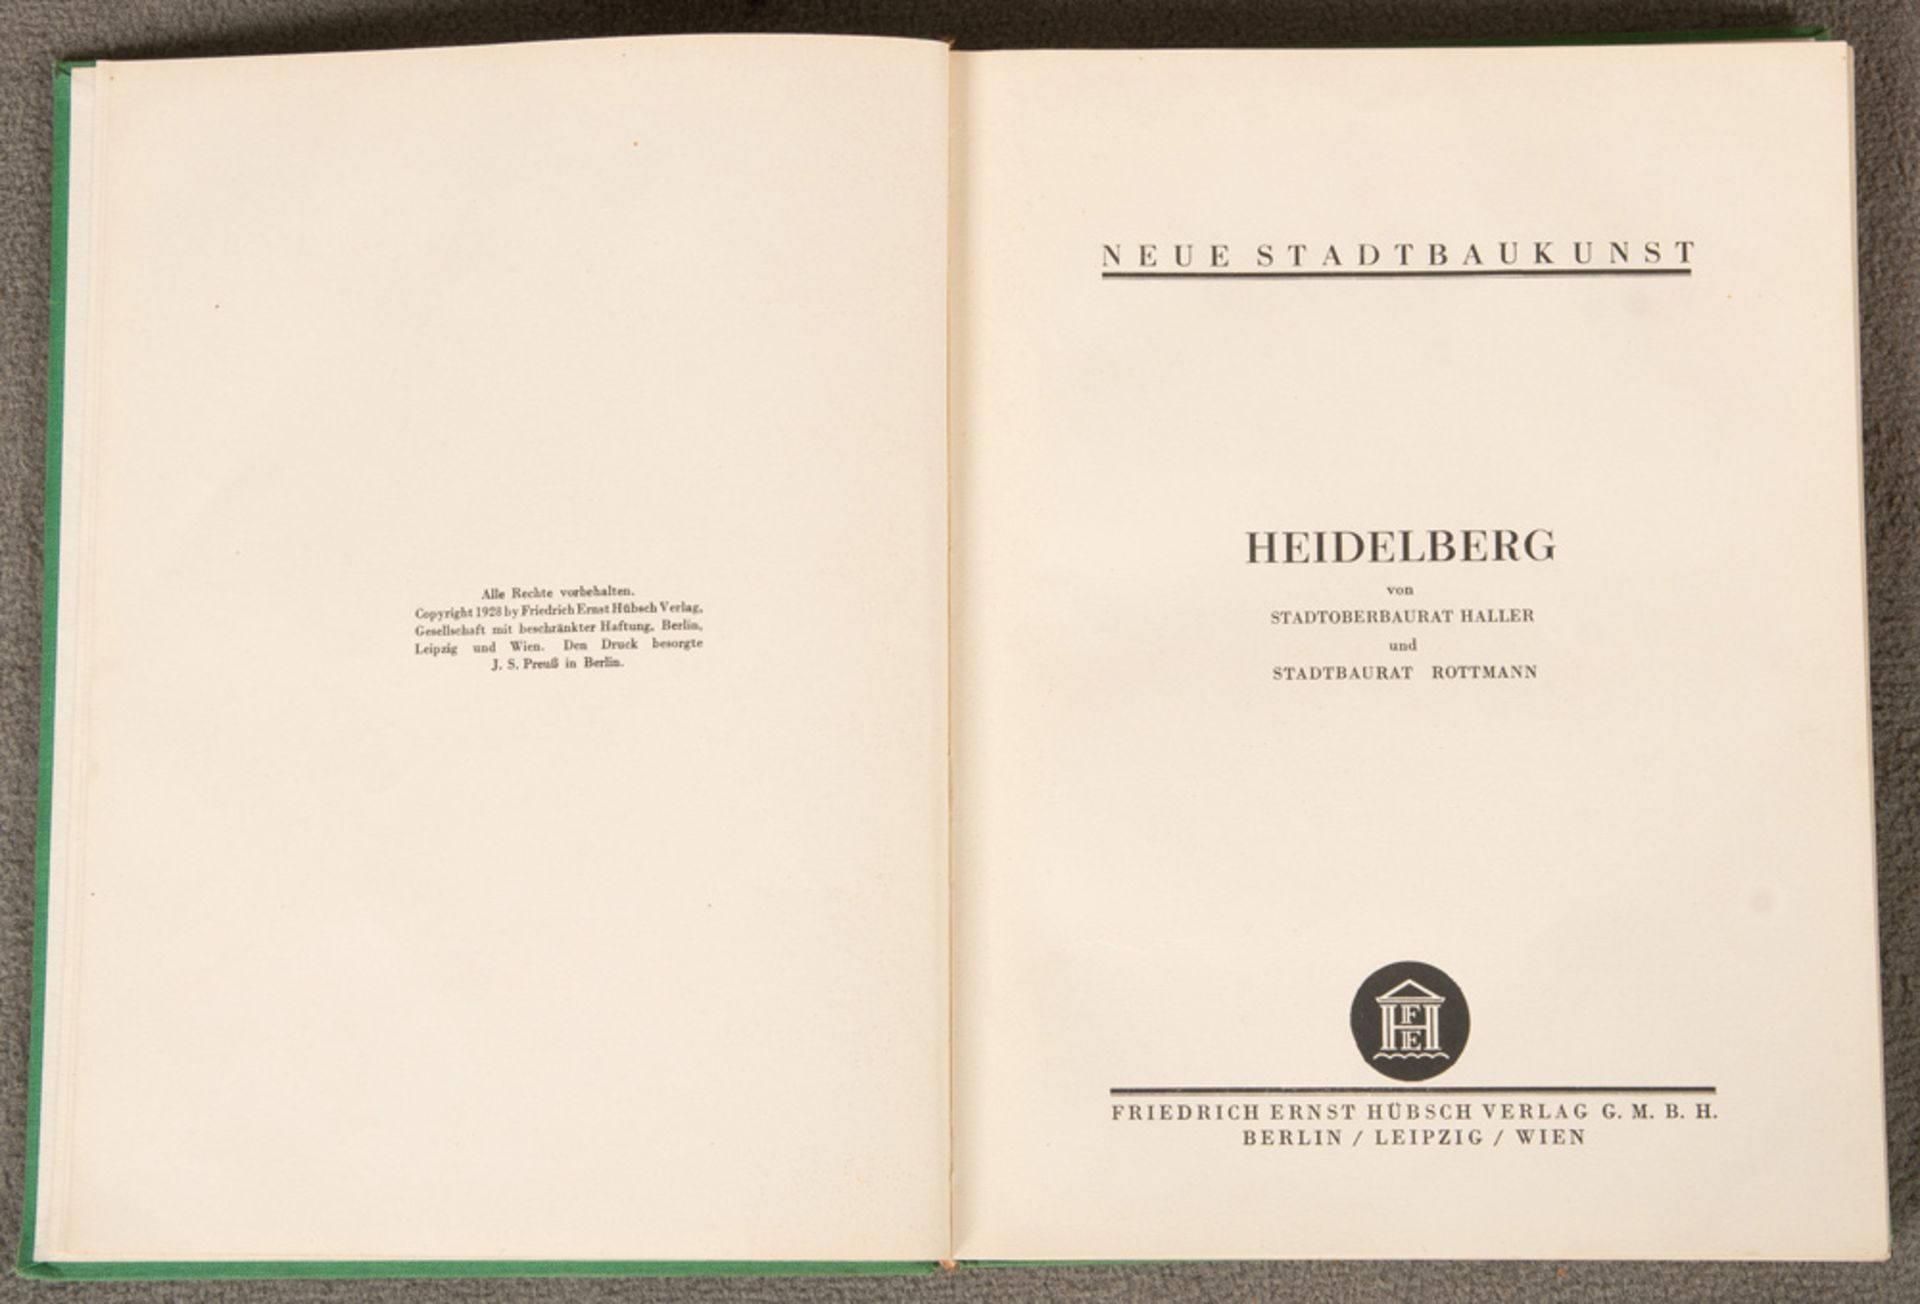 Buch „Neue Stadtbaukunst Heidelberg“ von Stadtoberbaurat Haller und Stadtbaurat Rottmann,